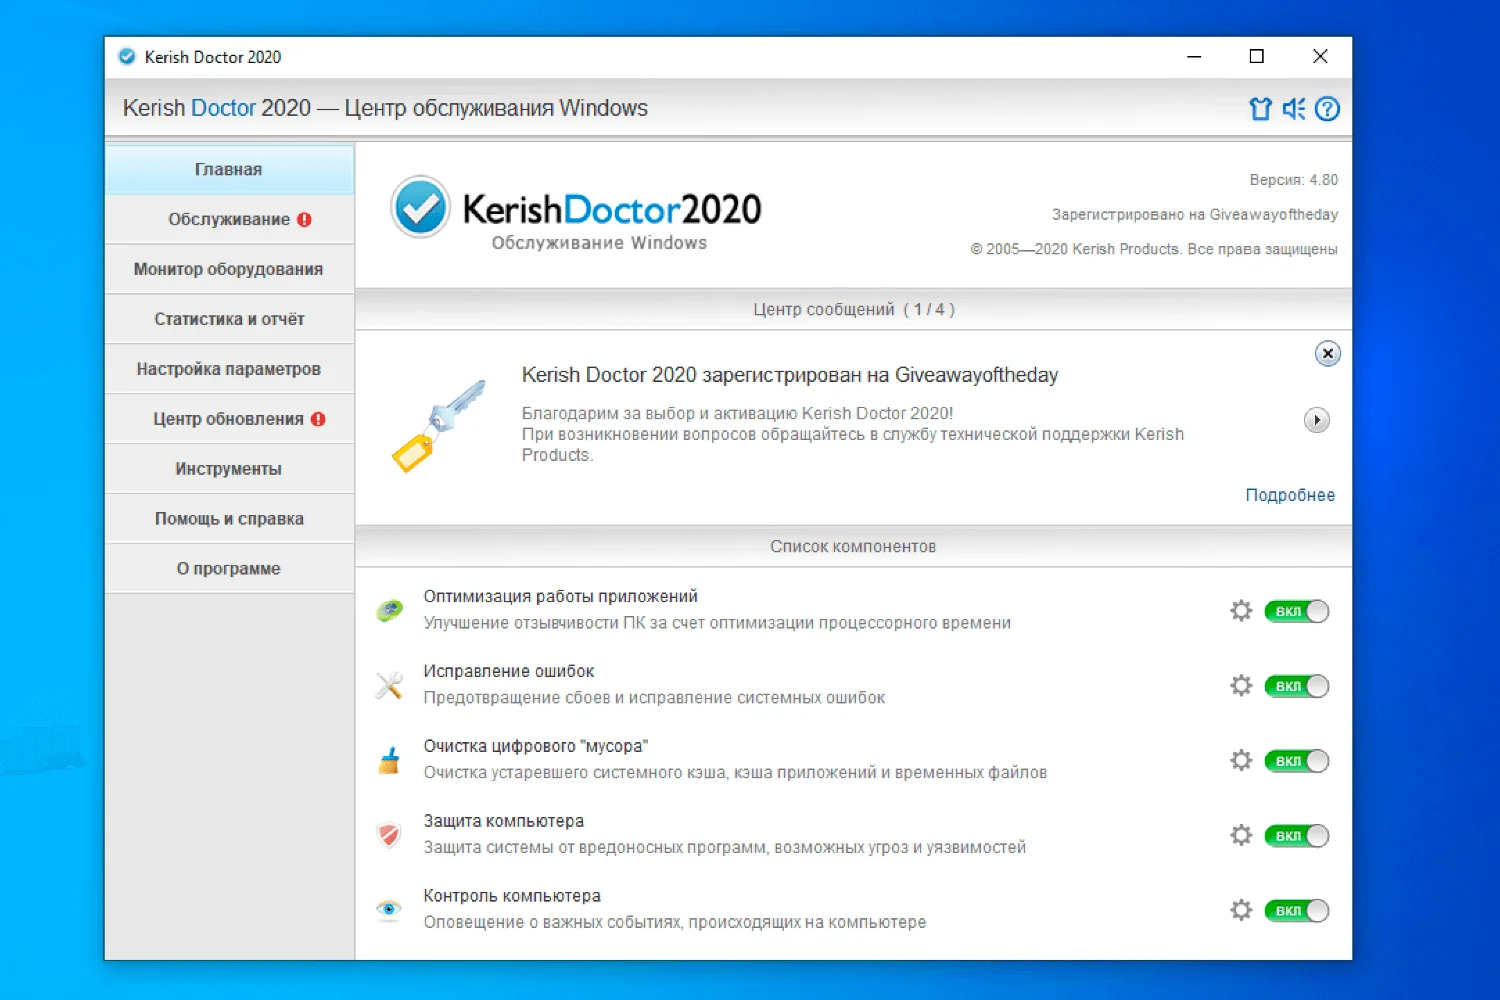 Kerish Doctor 2020 – бесплатная лицензия на 1 год